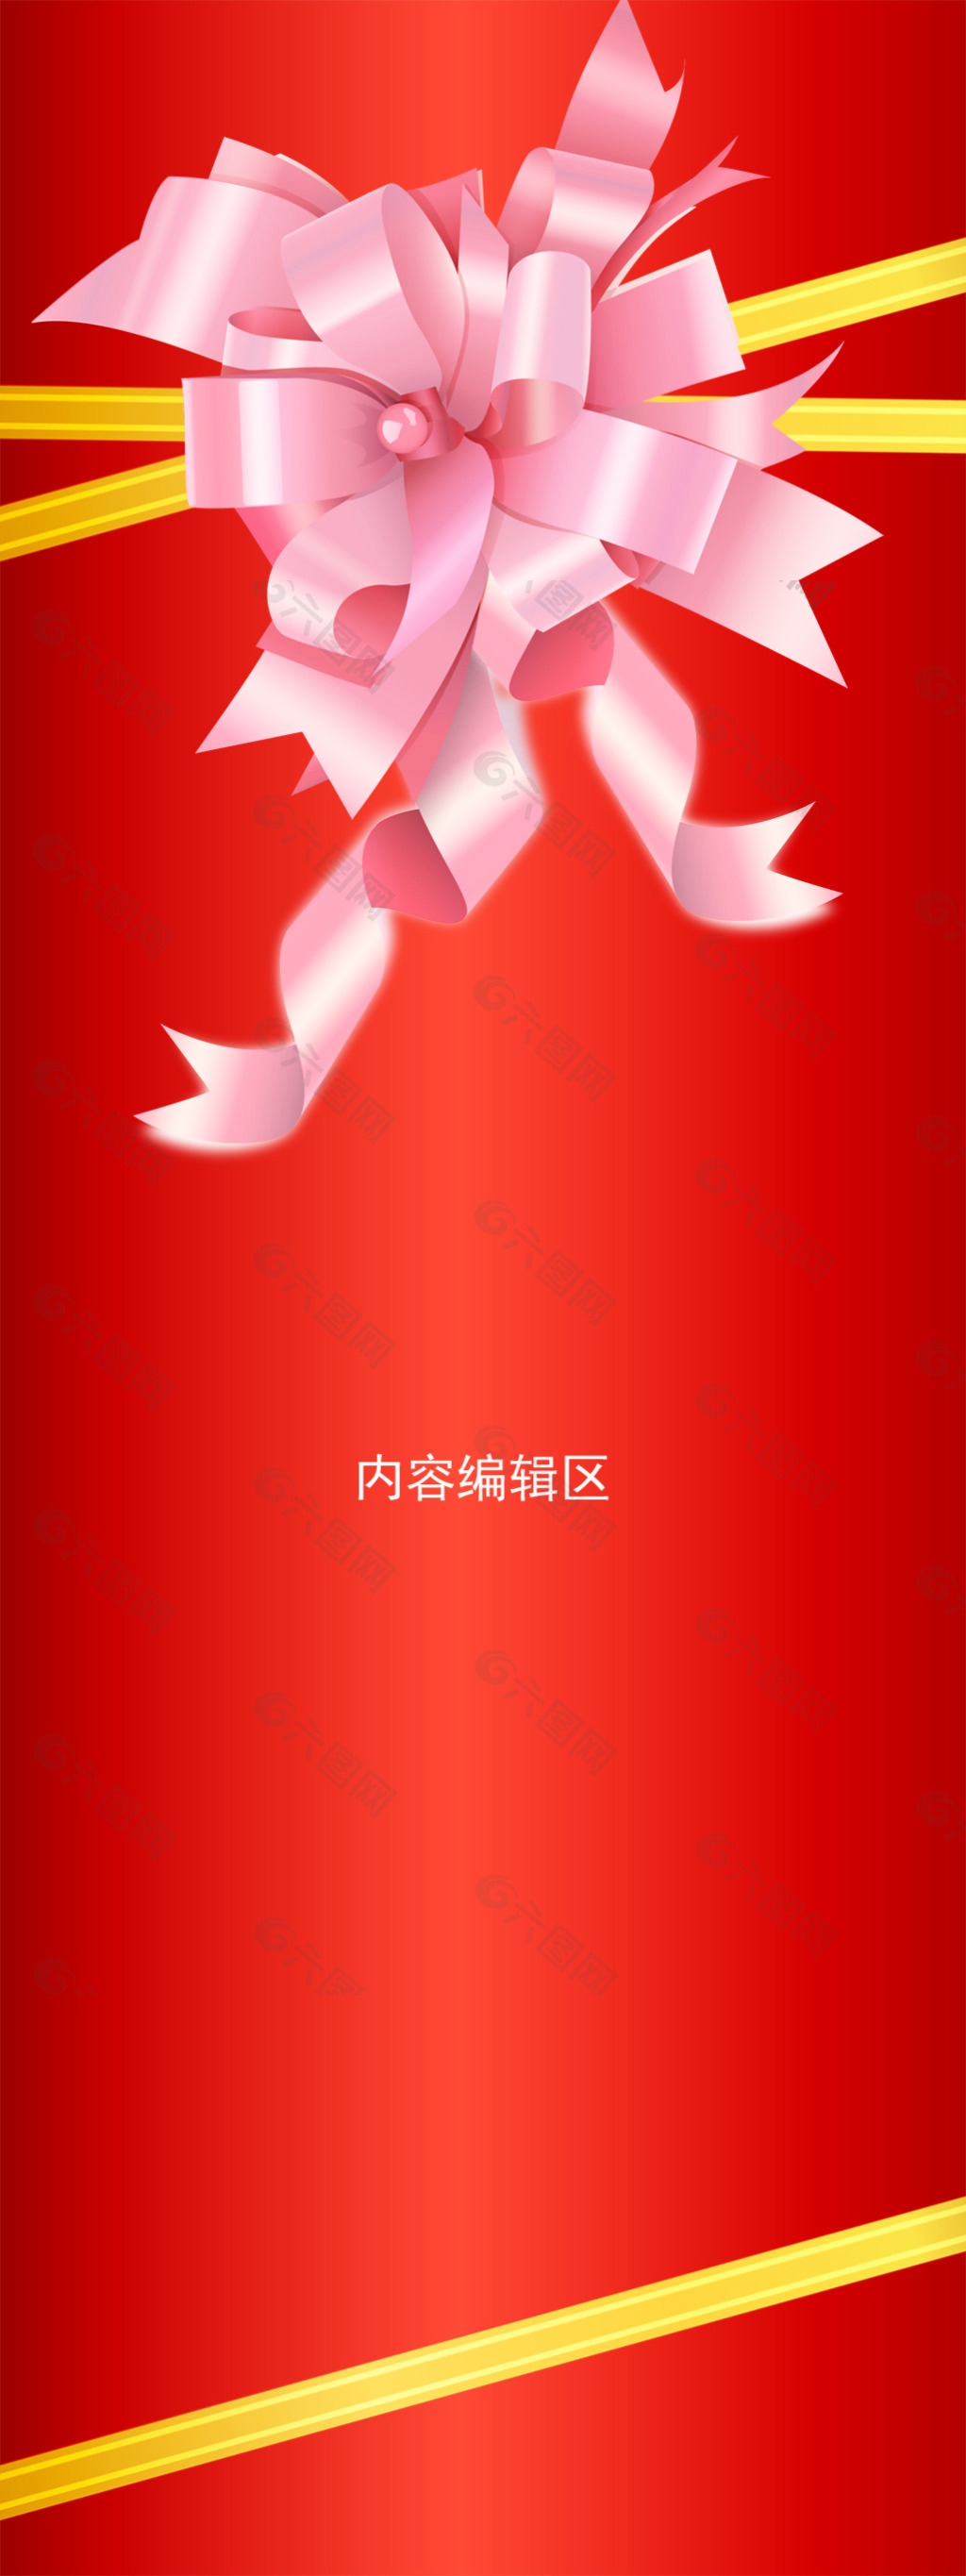 精美粉色中国结展架设计模板画面海报